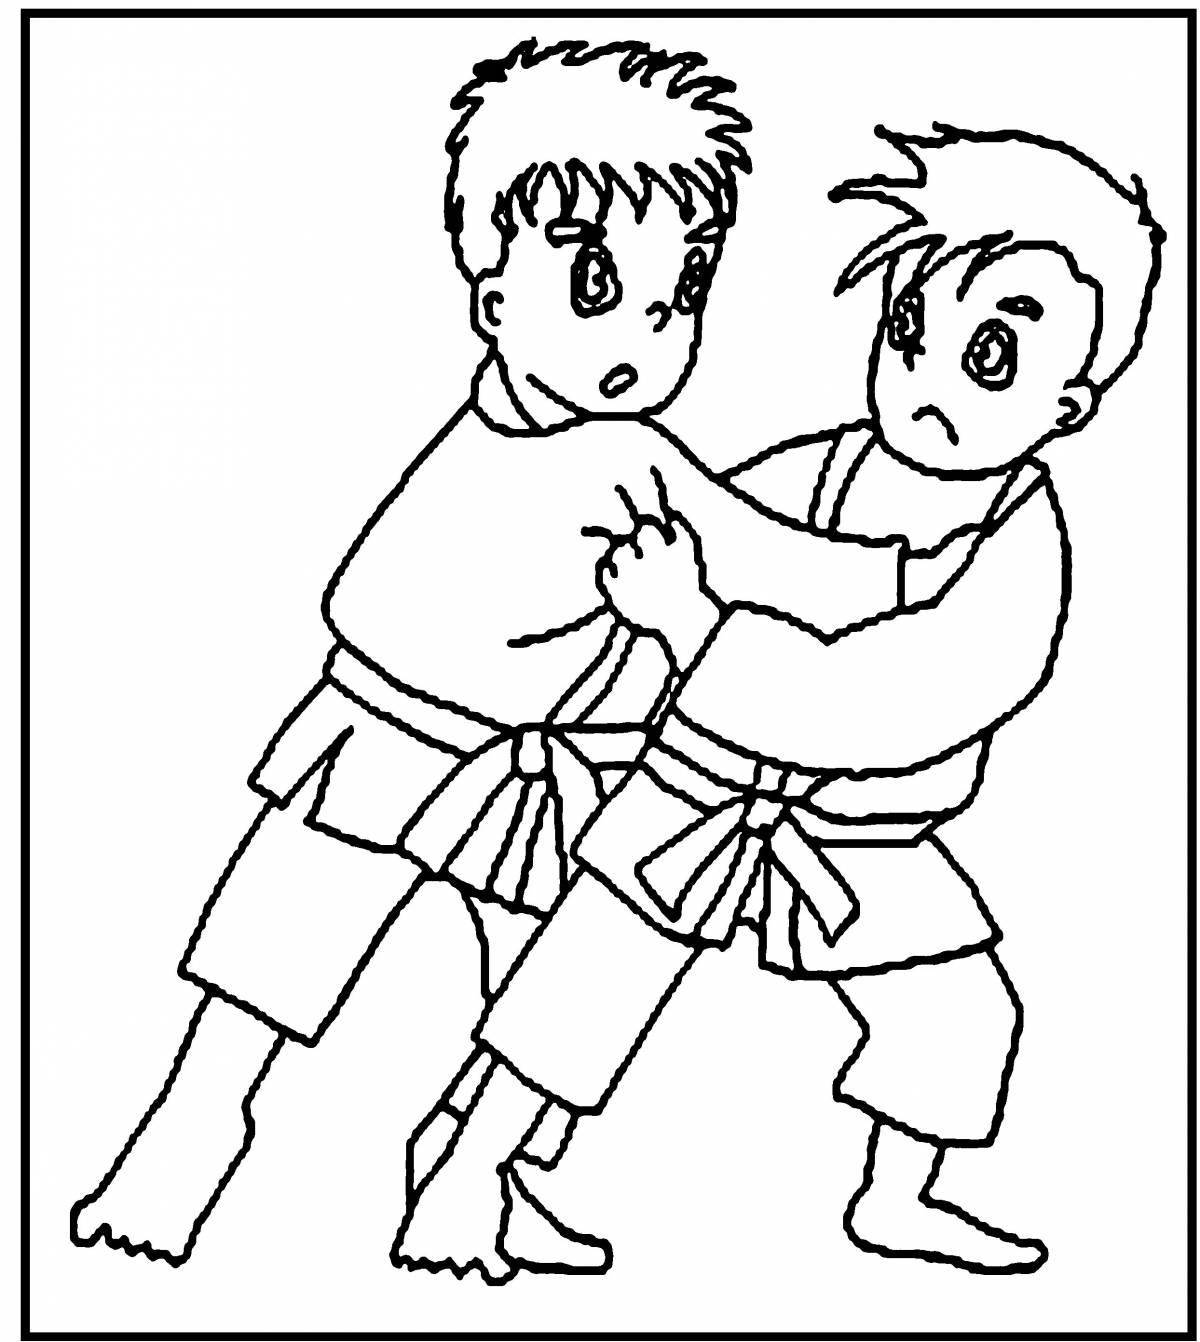 Taekwondo fun coloring book